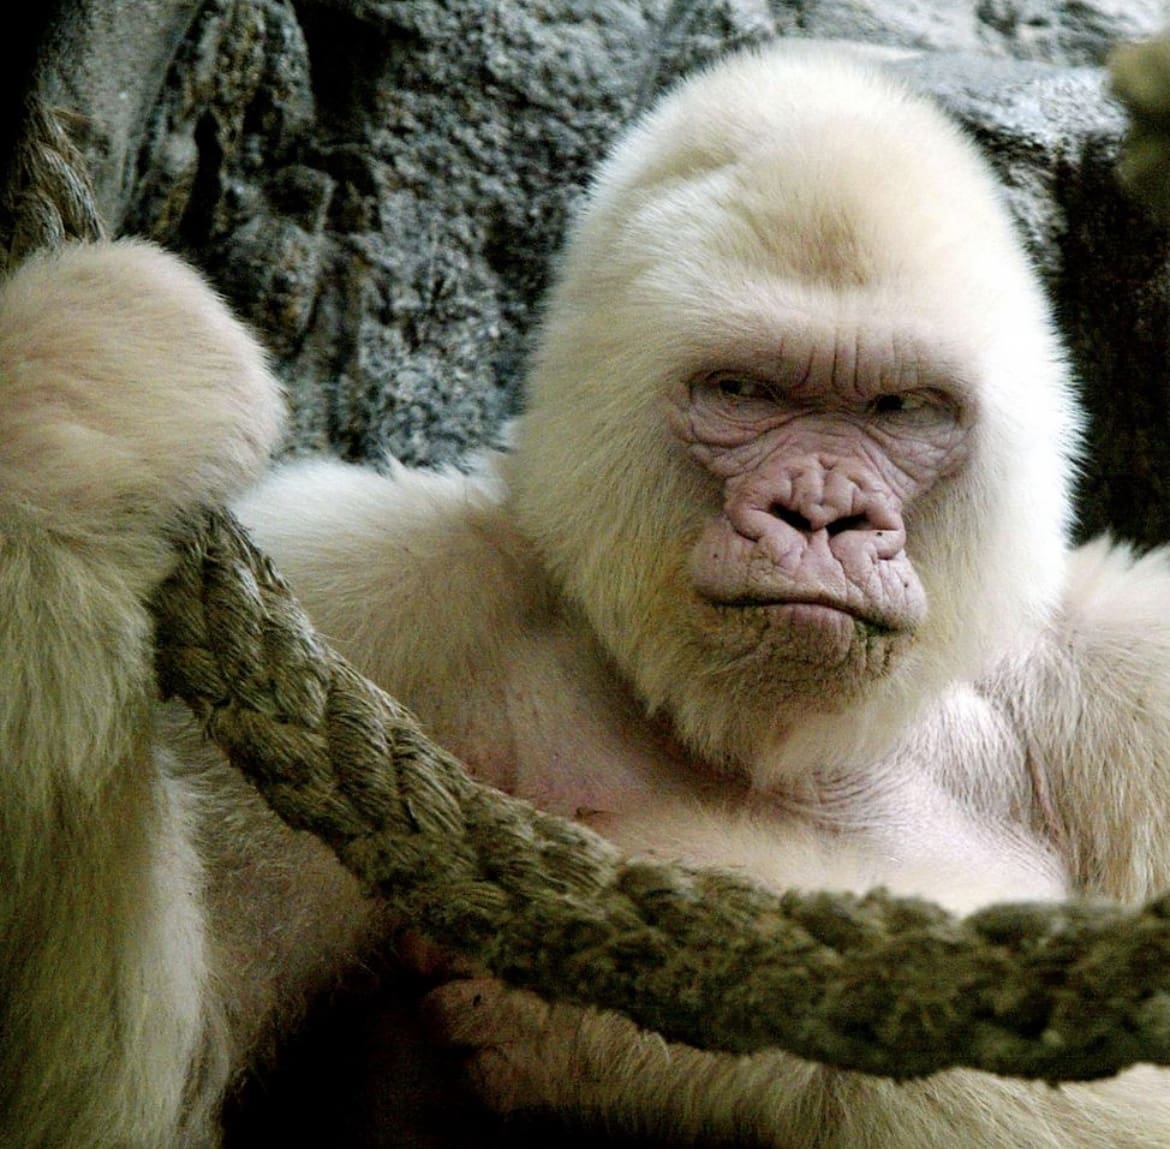 Albino gorilla